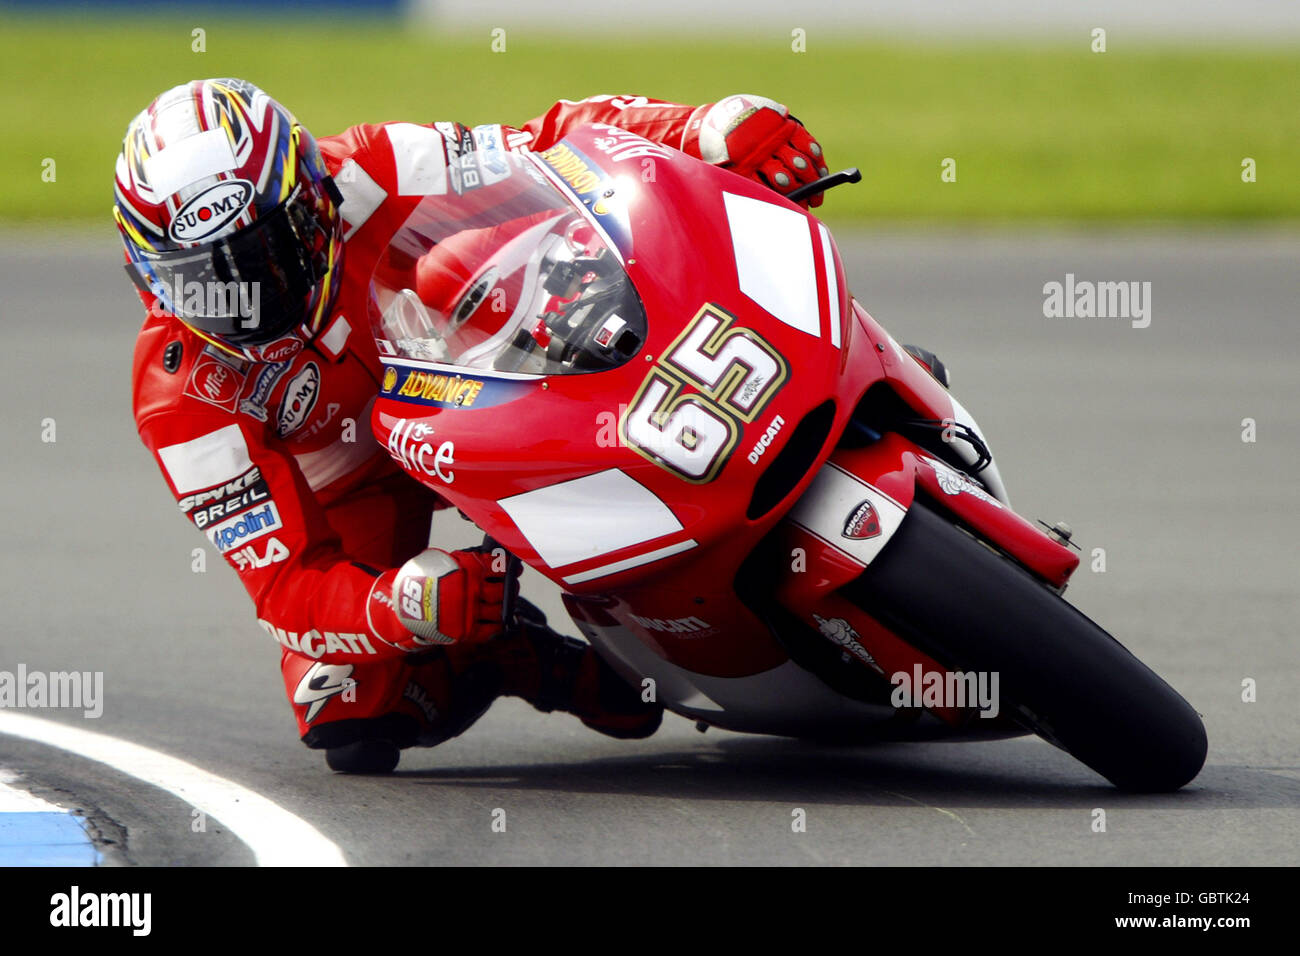 Motorradfahren - großer Preis von Großbritannien - Moto GP - Qualifikation. Loris Capirossi in Aktion Stockfoto